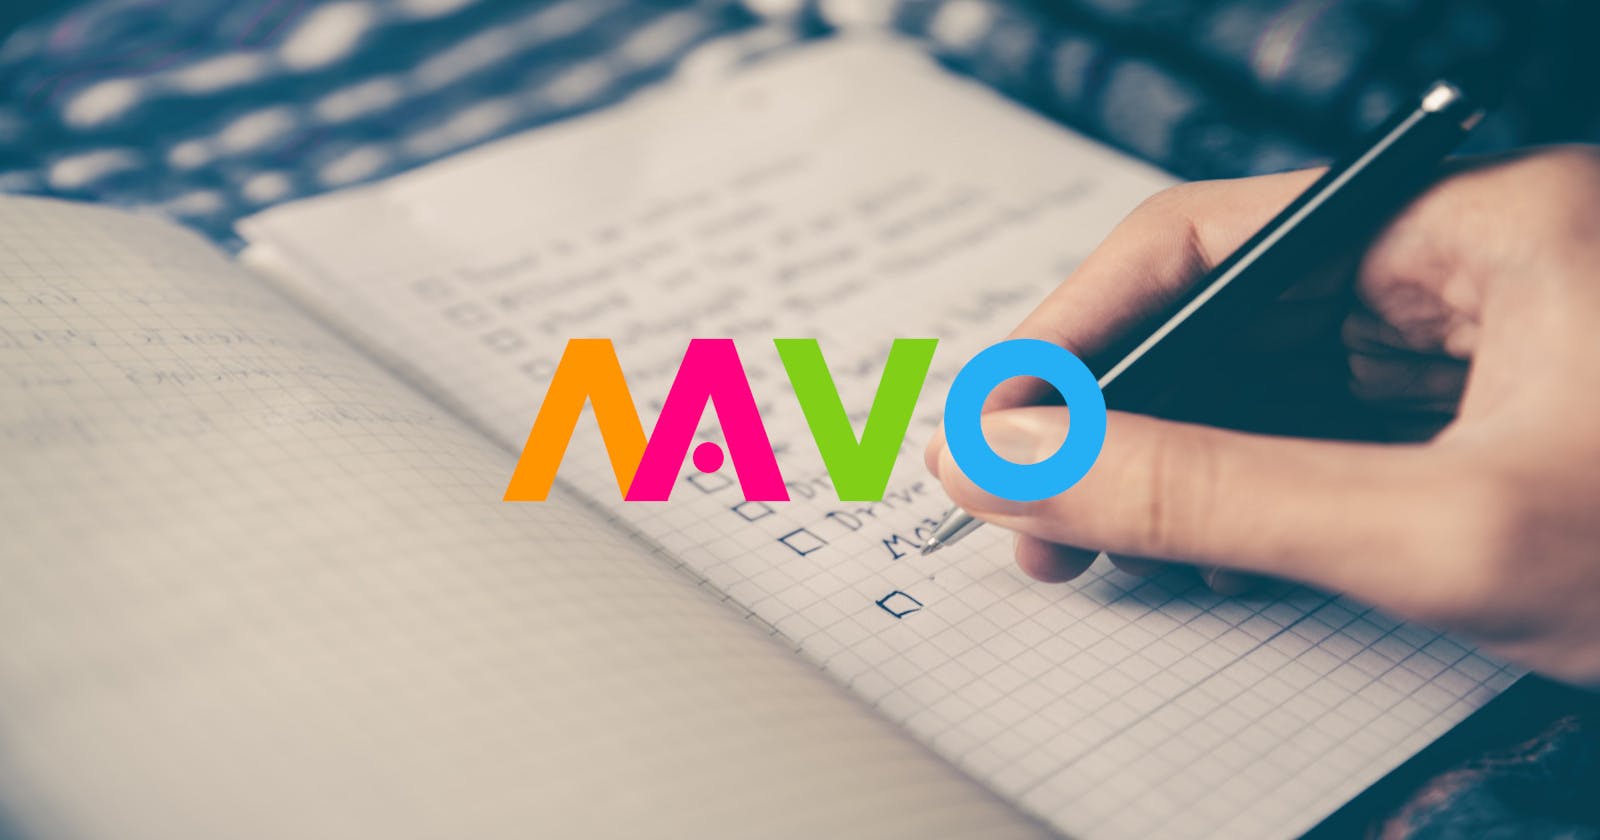 MAVO | App 1: Task Organizer